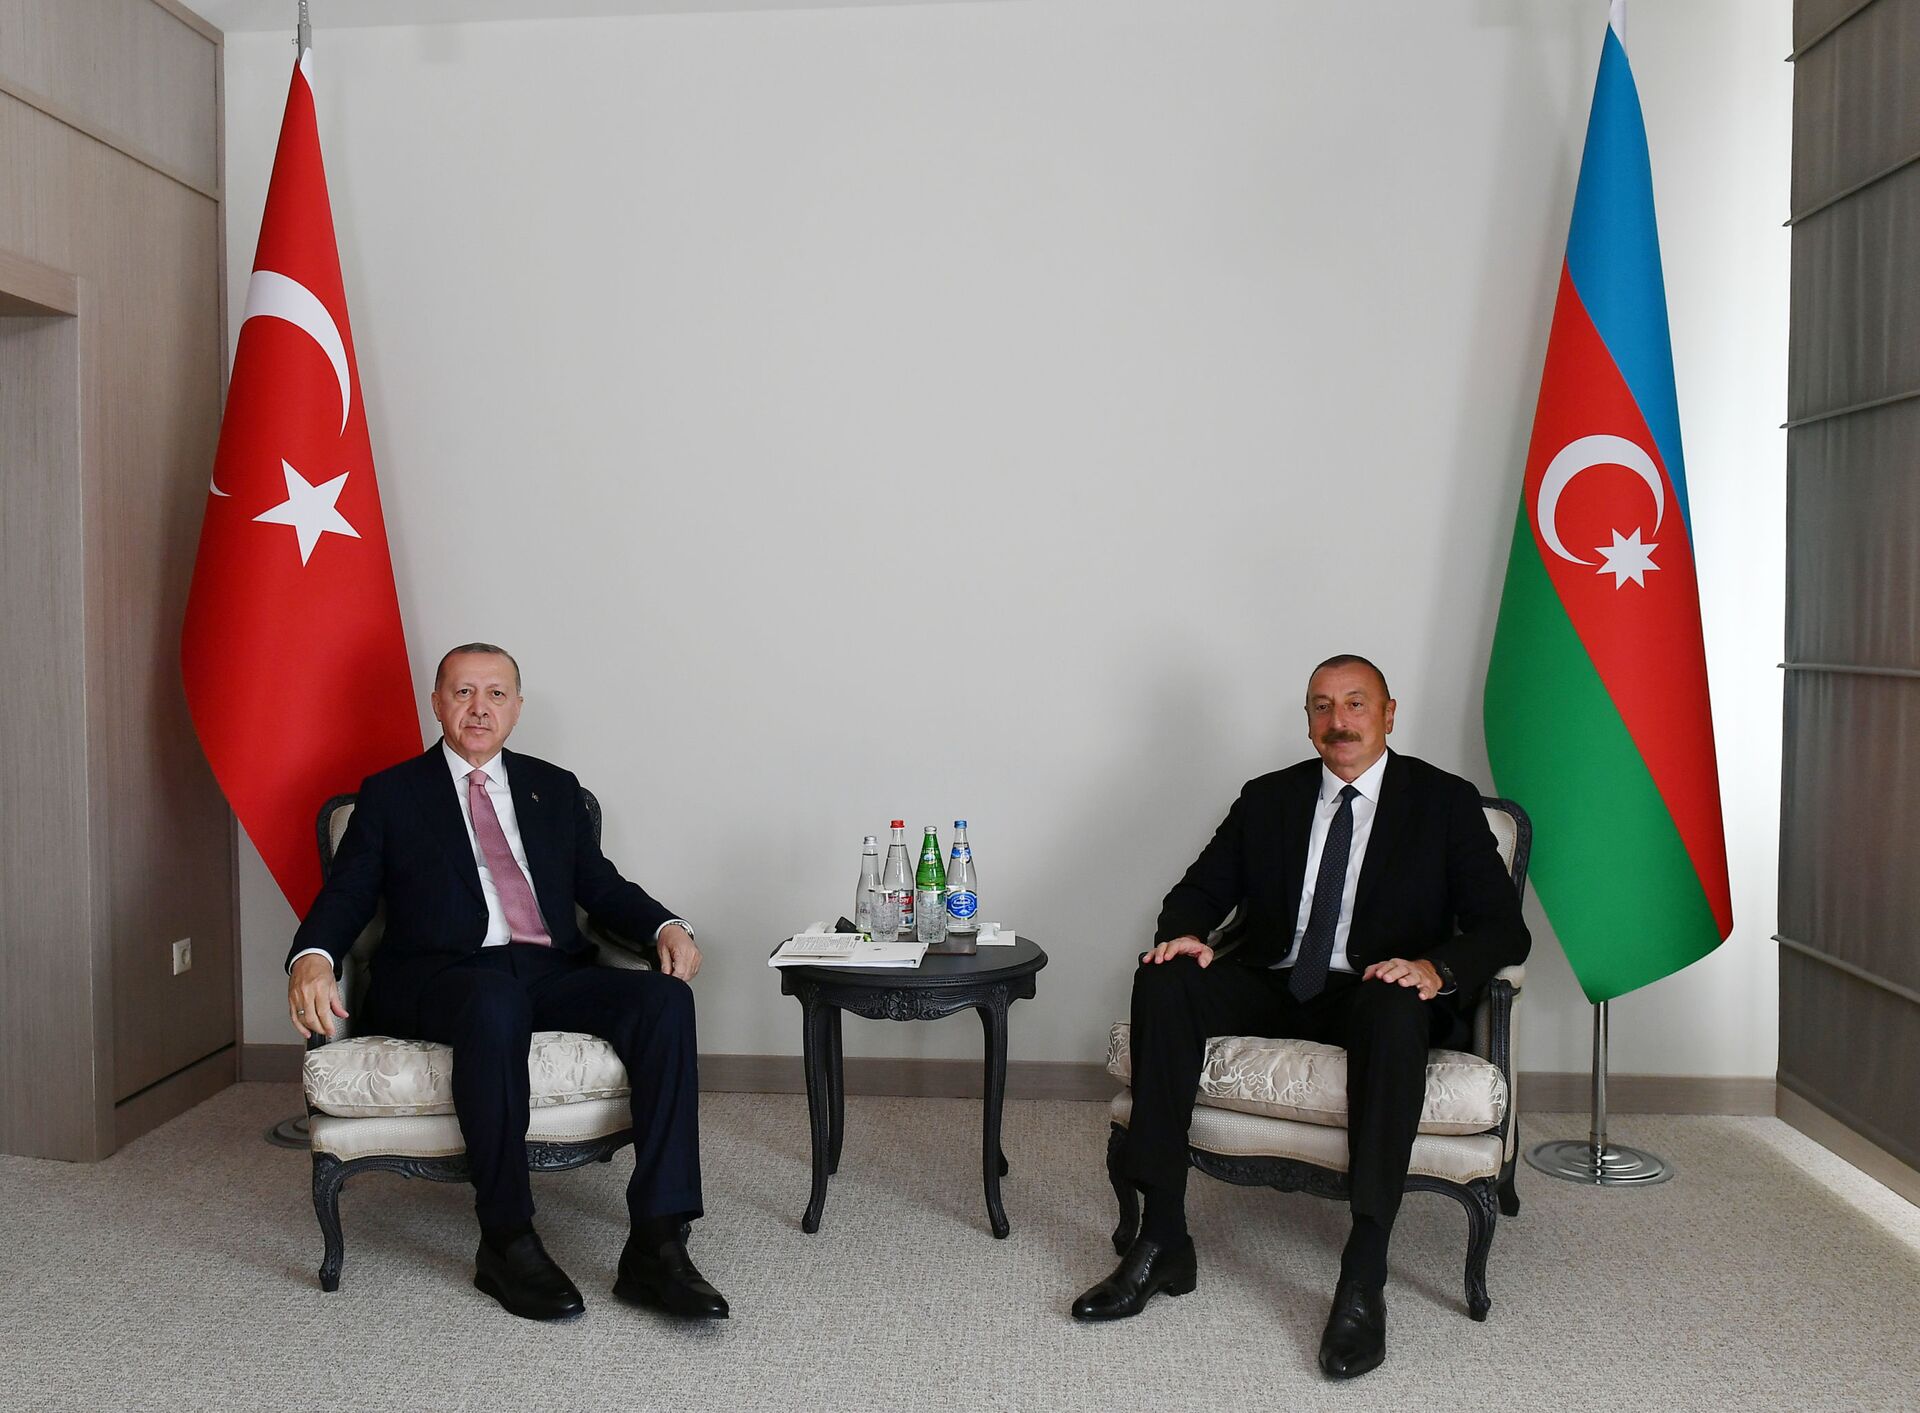 Переговоры Алиева и Эрдогана в Шуше: итоговые заявления - Sputnik Азербайджан, 1920, 16.06.2021